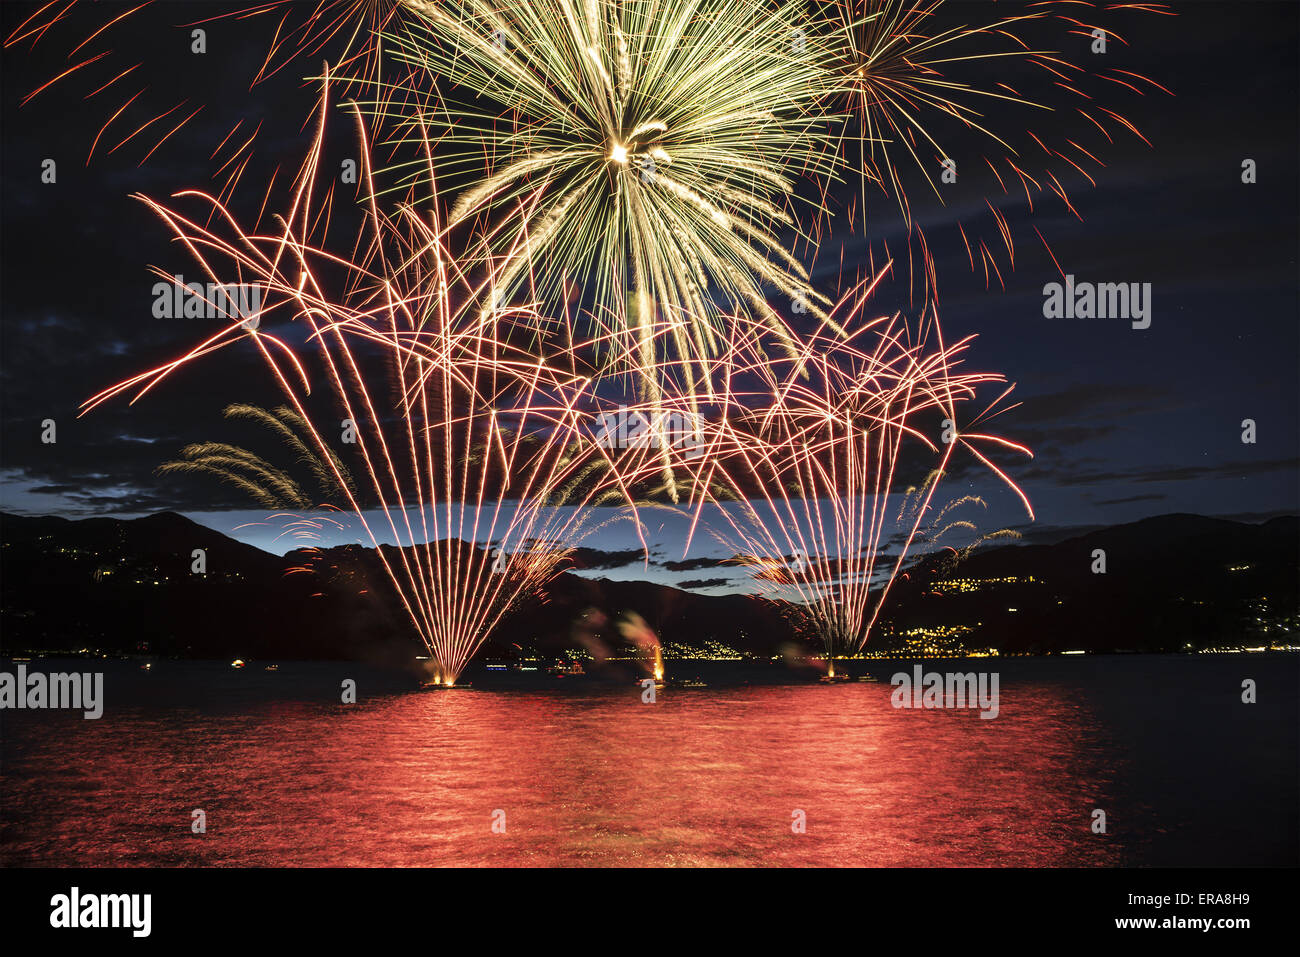 Am Seeufer Luino Feuerwerk auf dem Maggiore See im Sommer abends, Lombardei - Italien Stockfoto